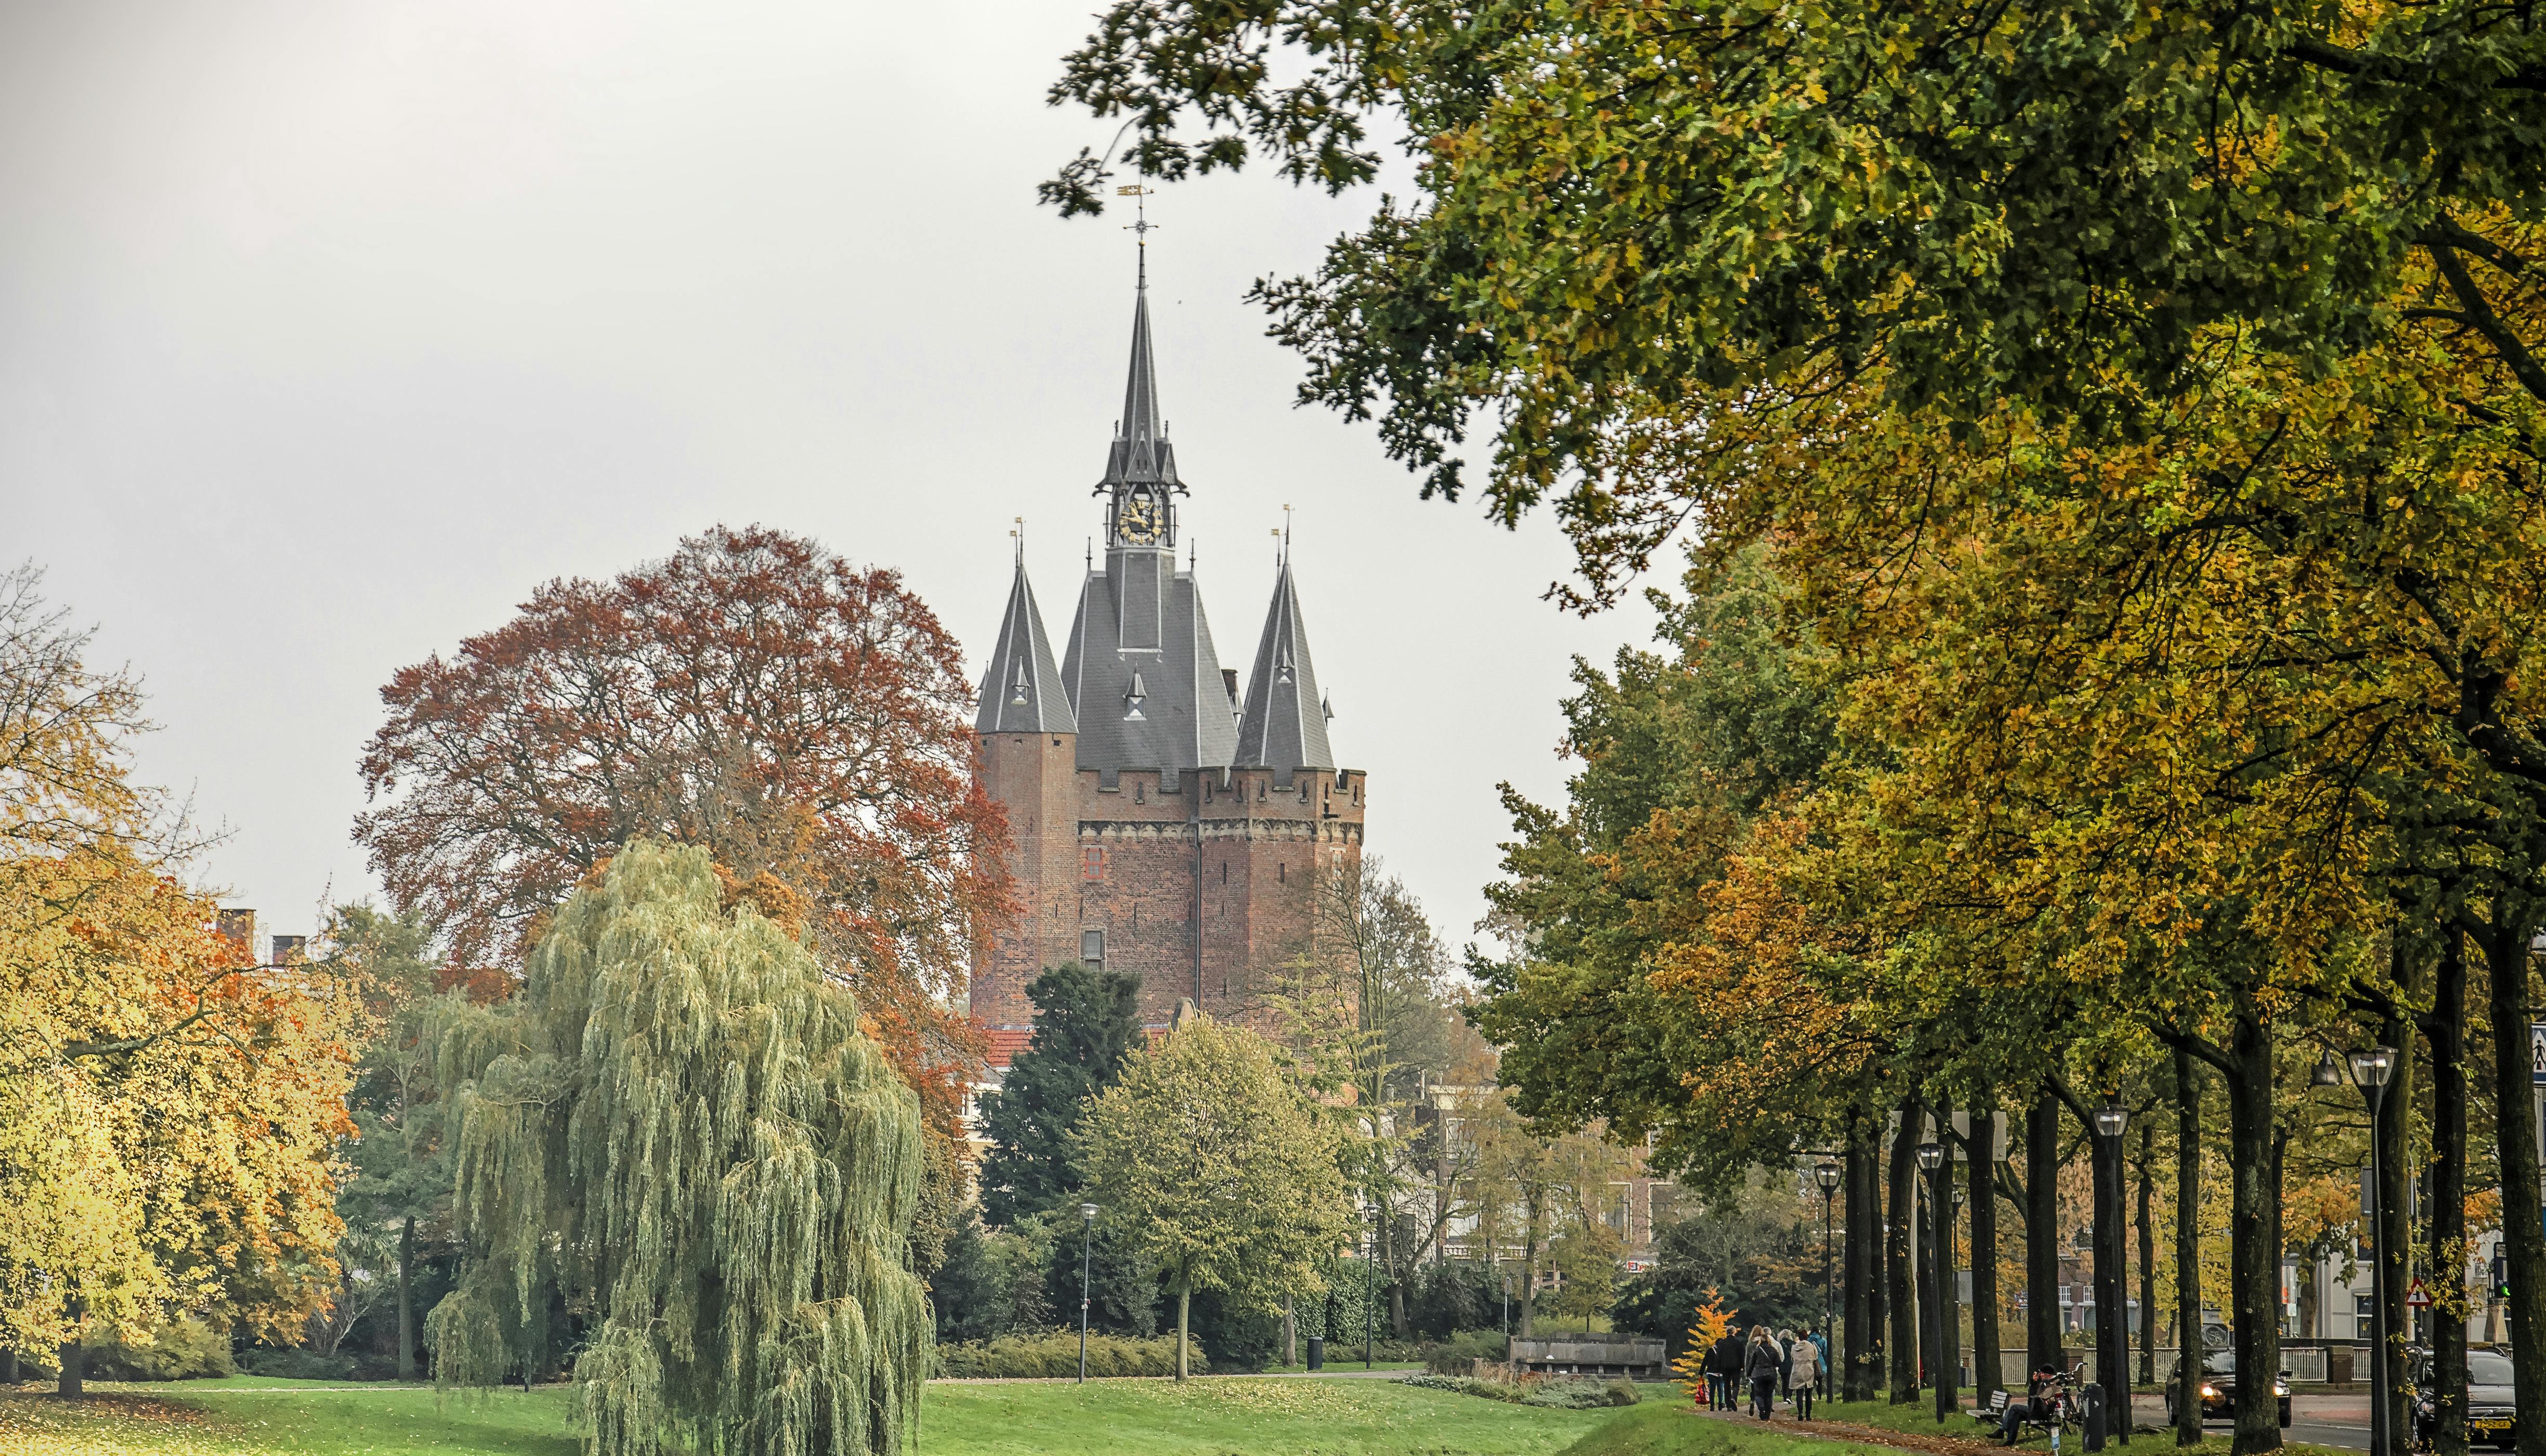 Visita autoguiada con el juego interactivo de la ciudad de Zwolle